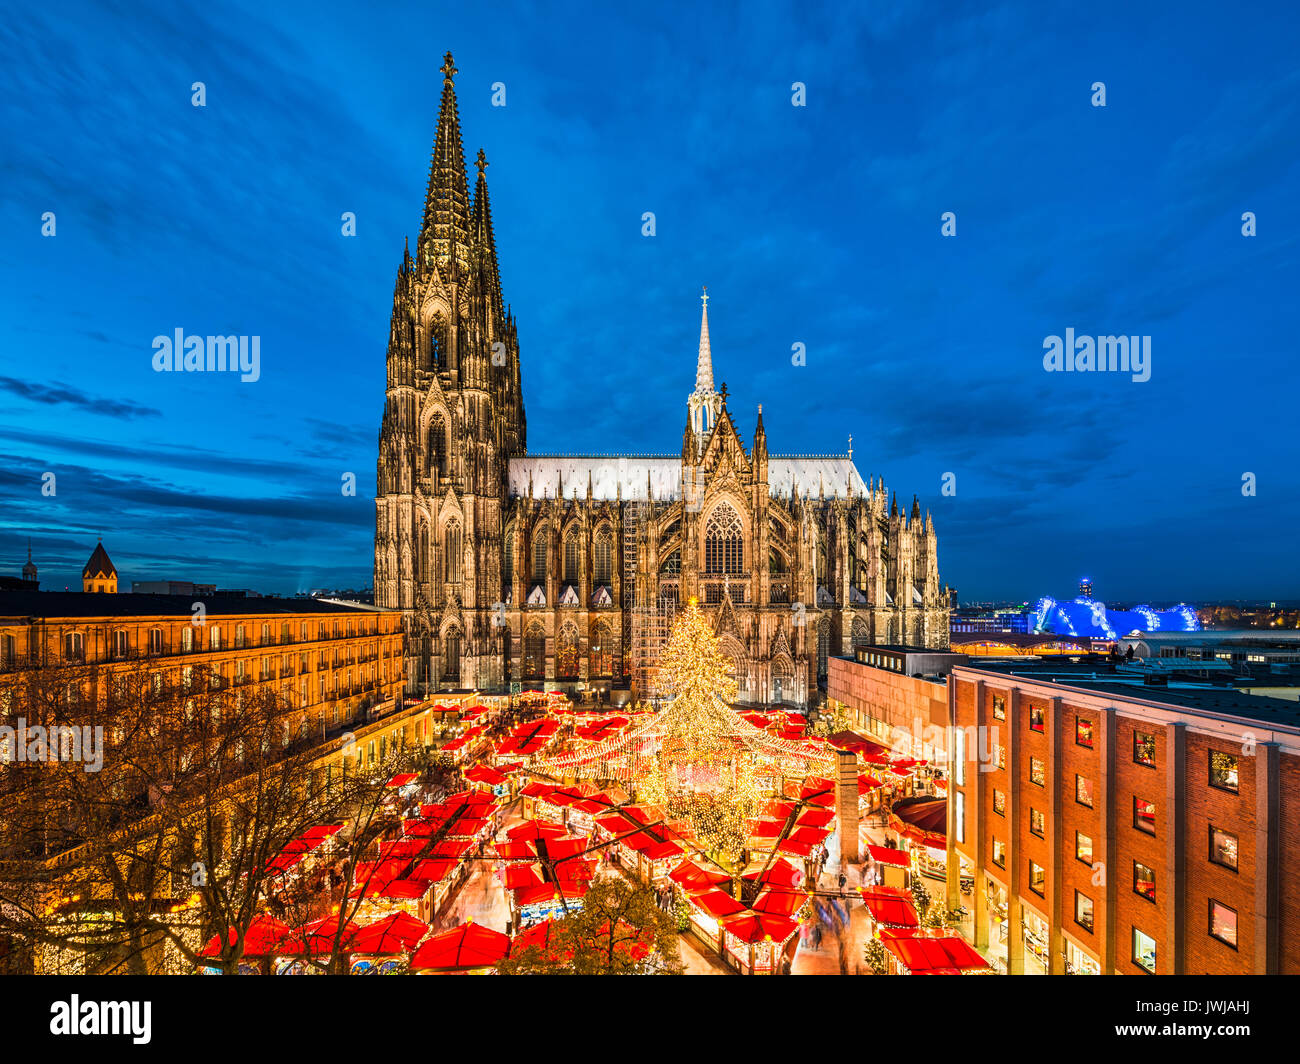 Marché de Noël en face de la cathédrale de Cologne, Allemagne Banque D'Images